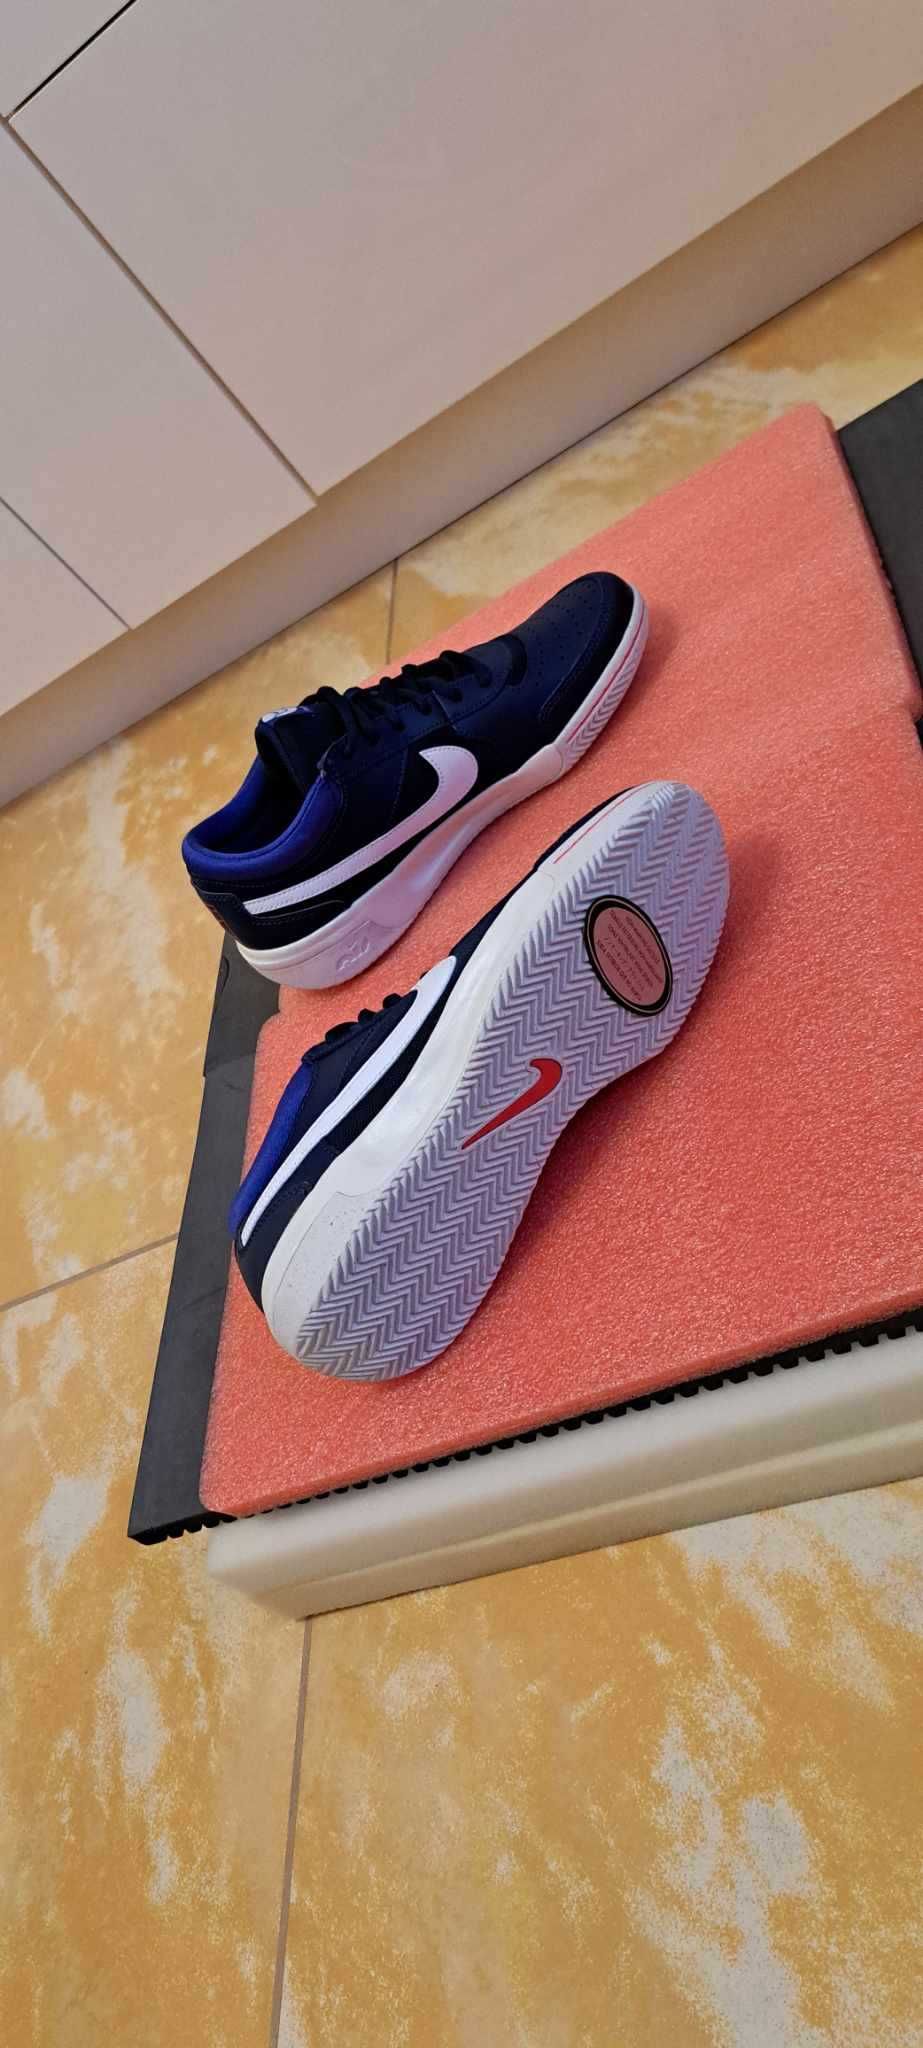 Adidasi unisex Nike/40.5